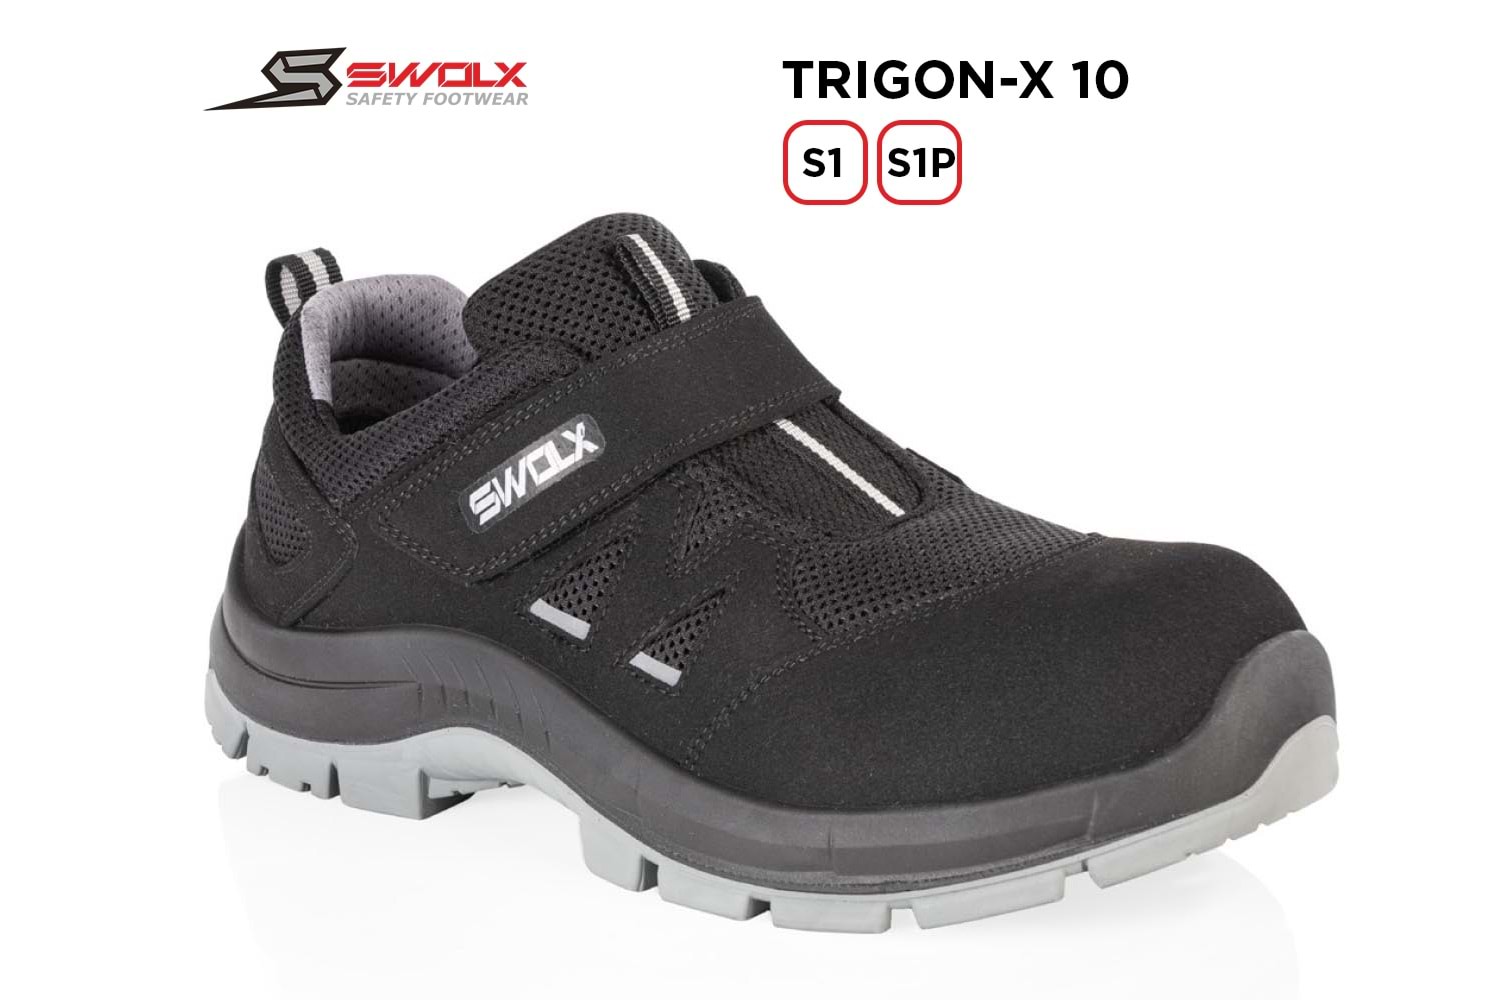 Swolx İş Ayakkabısı - Trigon-X 10 S1 (Trigon-x 110 S1) - 43